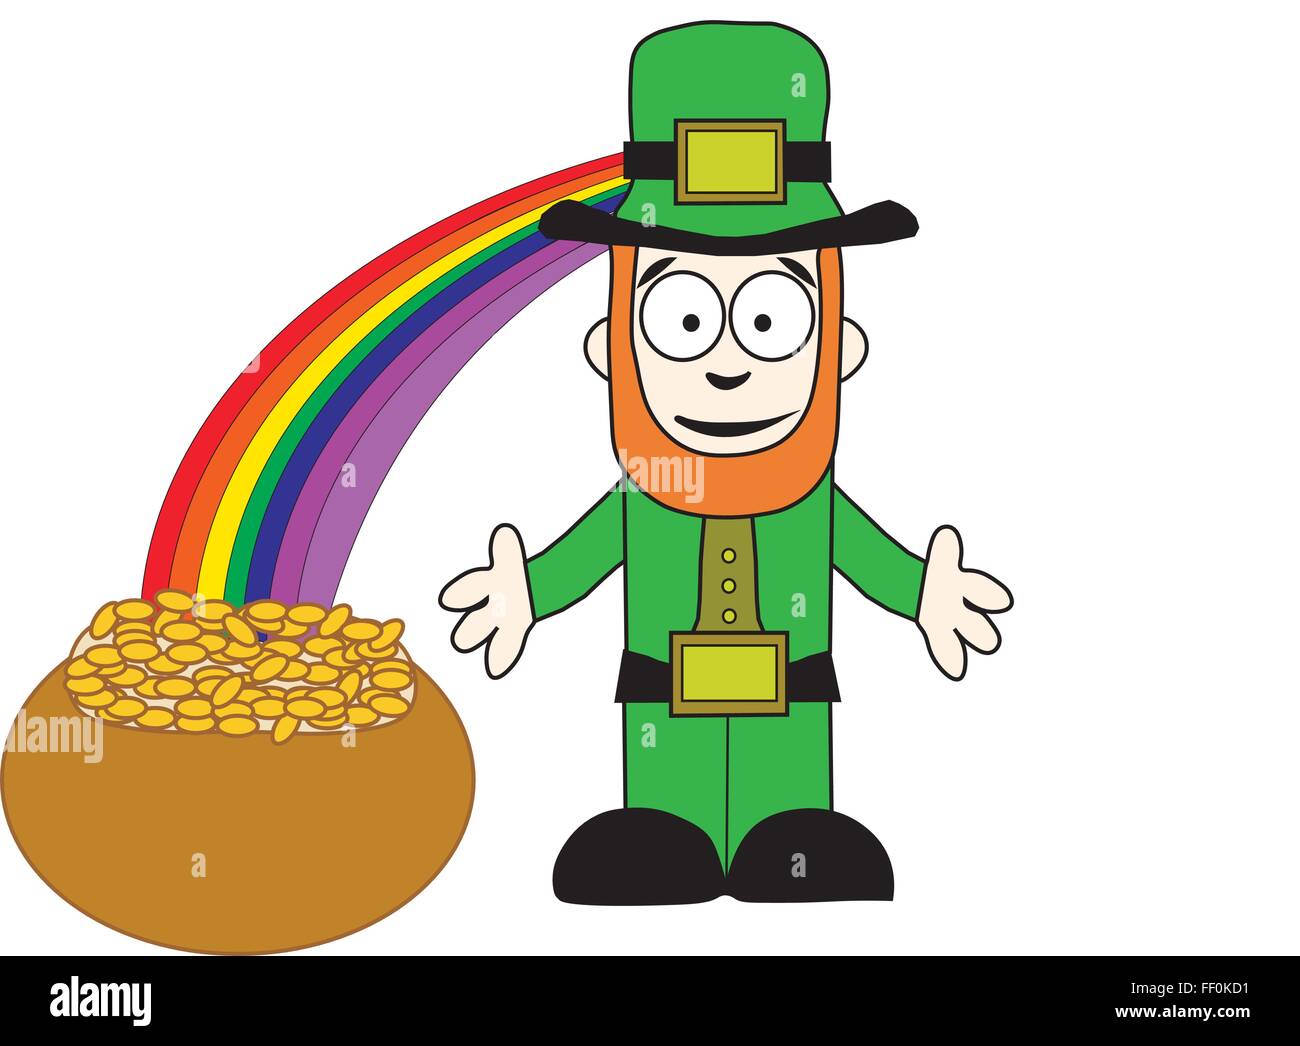 Karikatur von Kobold in grüne Hose und Jacke mit offenen Armen neben Topf  voll Gold am Ende des Regenbogens steht lächelnd Stock-Vektorgrafik - Alamy